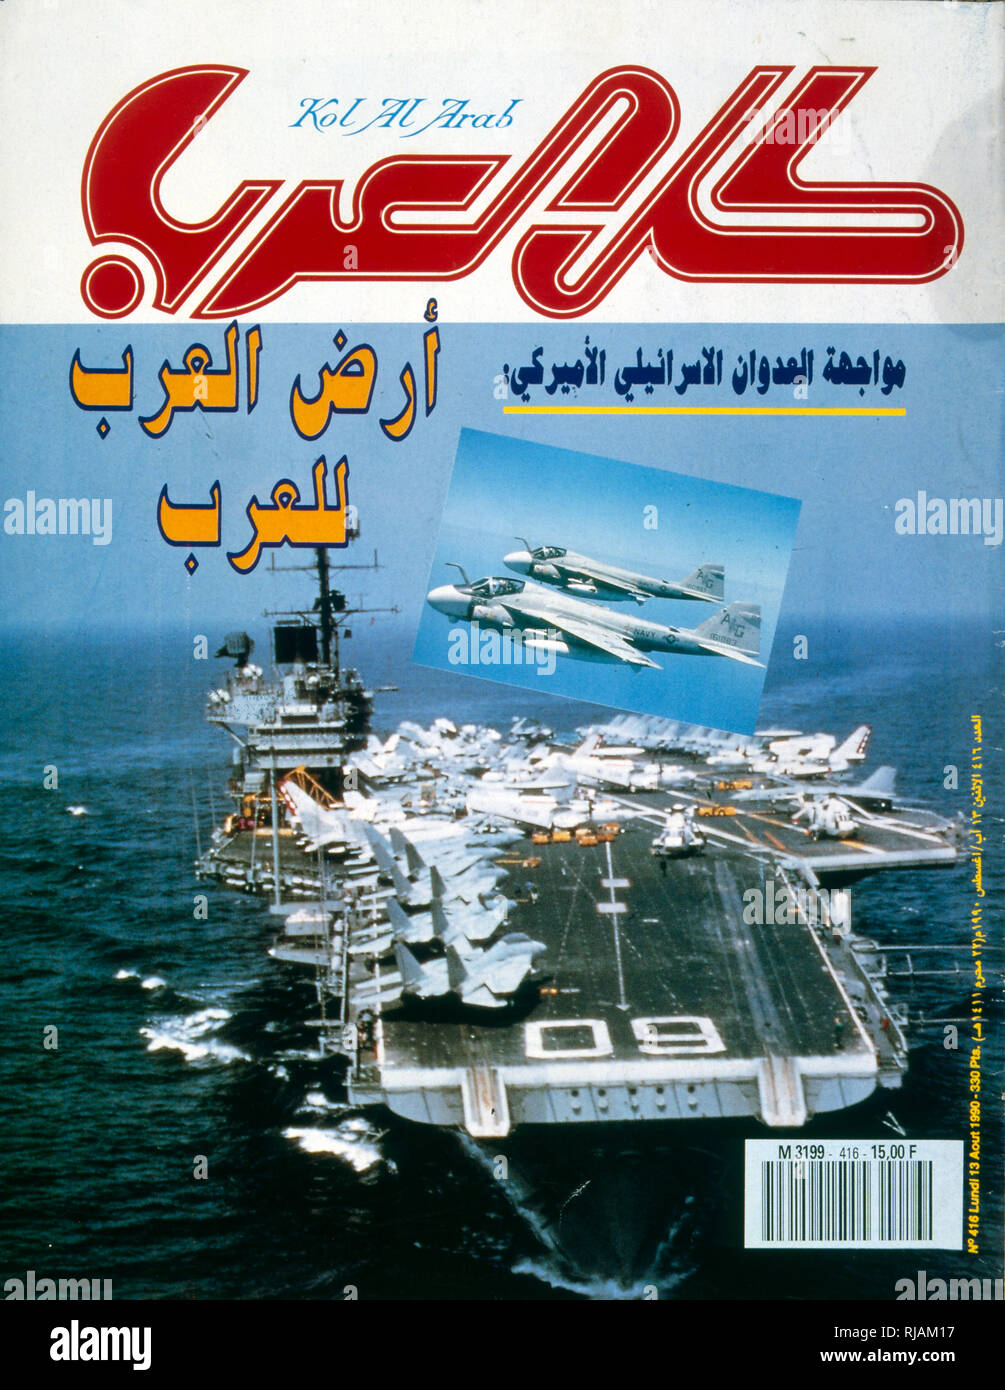 Titre dans 'Kol al Arab" un magazine arabe, en août 1990, montrant l'accumulation des forces navales américaines dans le golfe Persique durant la guerre du Golfe de 1990-1991 Banque D'Images